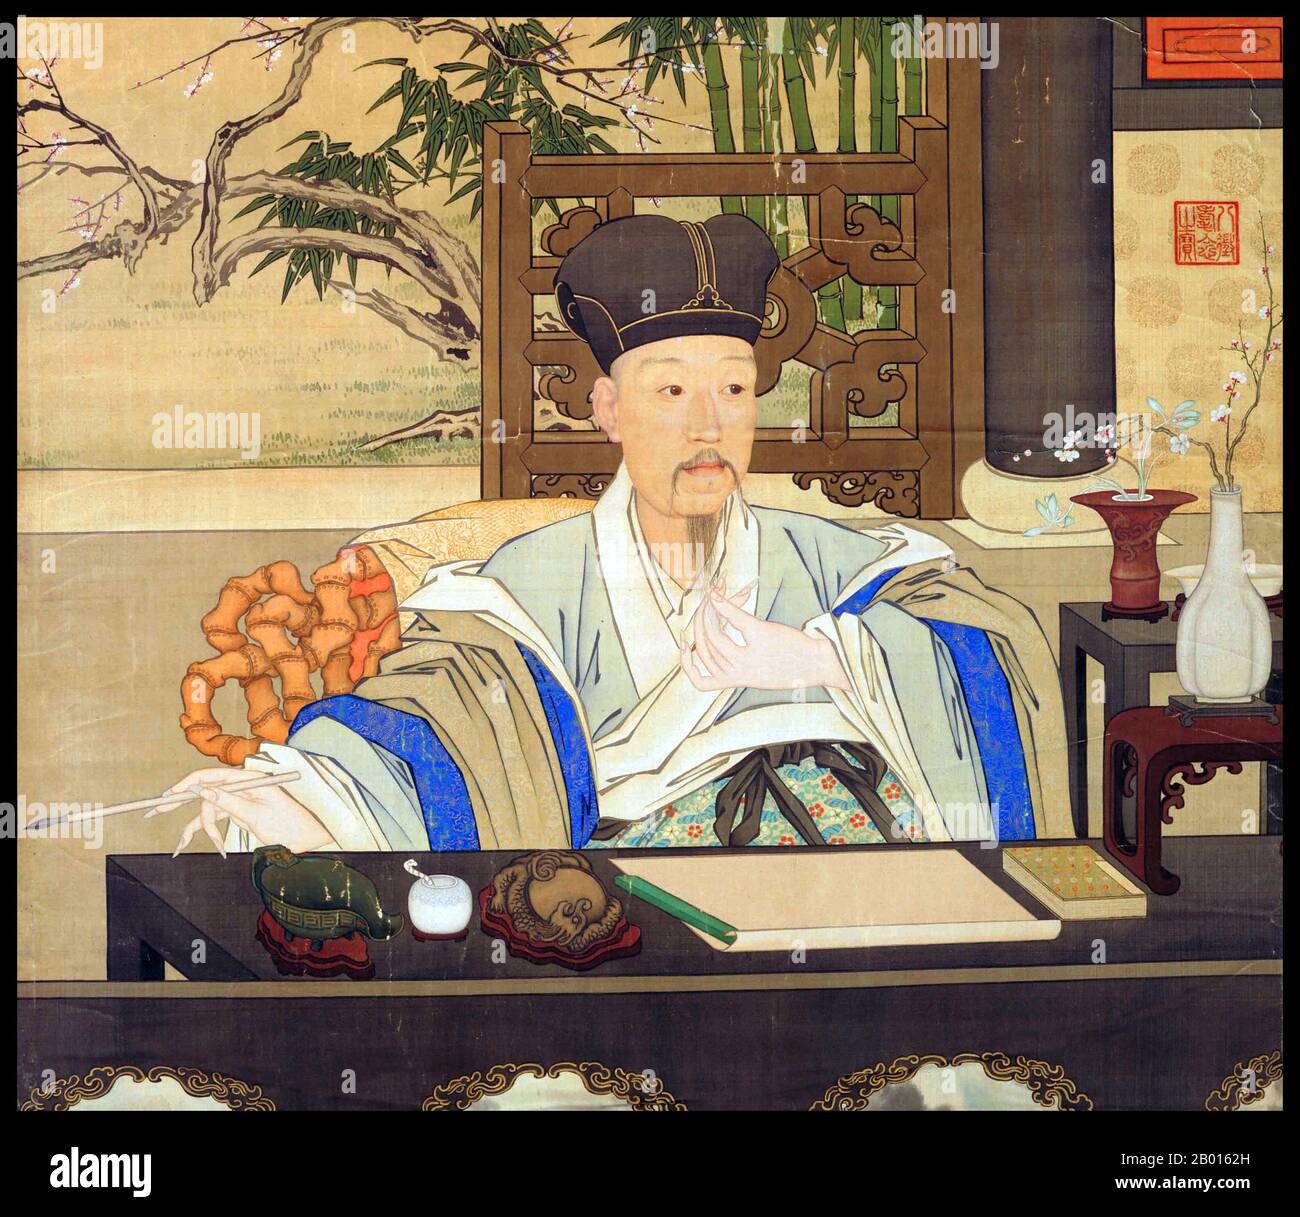 Cina: 'L'imperatore Qianlong nel suo studio'. Dipinto a scroll appeso di Giuseppe Castiglione (1688-1766), c.. 1750. L'imperatore Qianlong (25 settembre 1711 - 7 febbraio 1799), nato Hongli e il nome del tempio Gaozong, fu il quinto imperatore della dinastia Qing. Quarto figlio dell'imperatore Yongzheng, regnò ufficialmente dal 1735 al 1796, prima di abdicare a favore di suo figlio, l'imperatore Jiaqing - un atto filiale per non governare più a lungo di suo nonno, l'imperatore Kangxi. Nonostante il suo pensionamento, mantenne il potere ultimo fino alla sua morte. Foto Stock